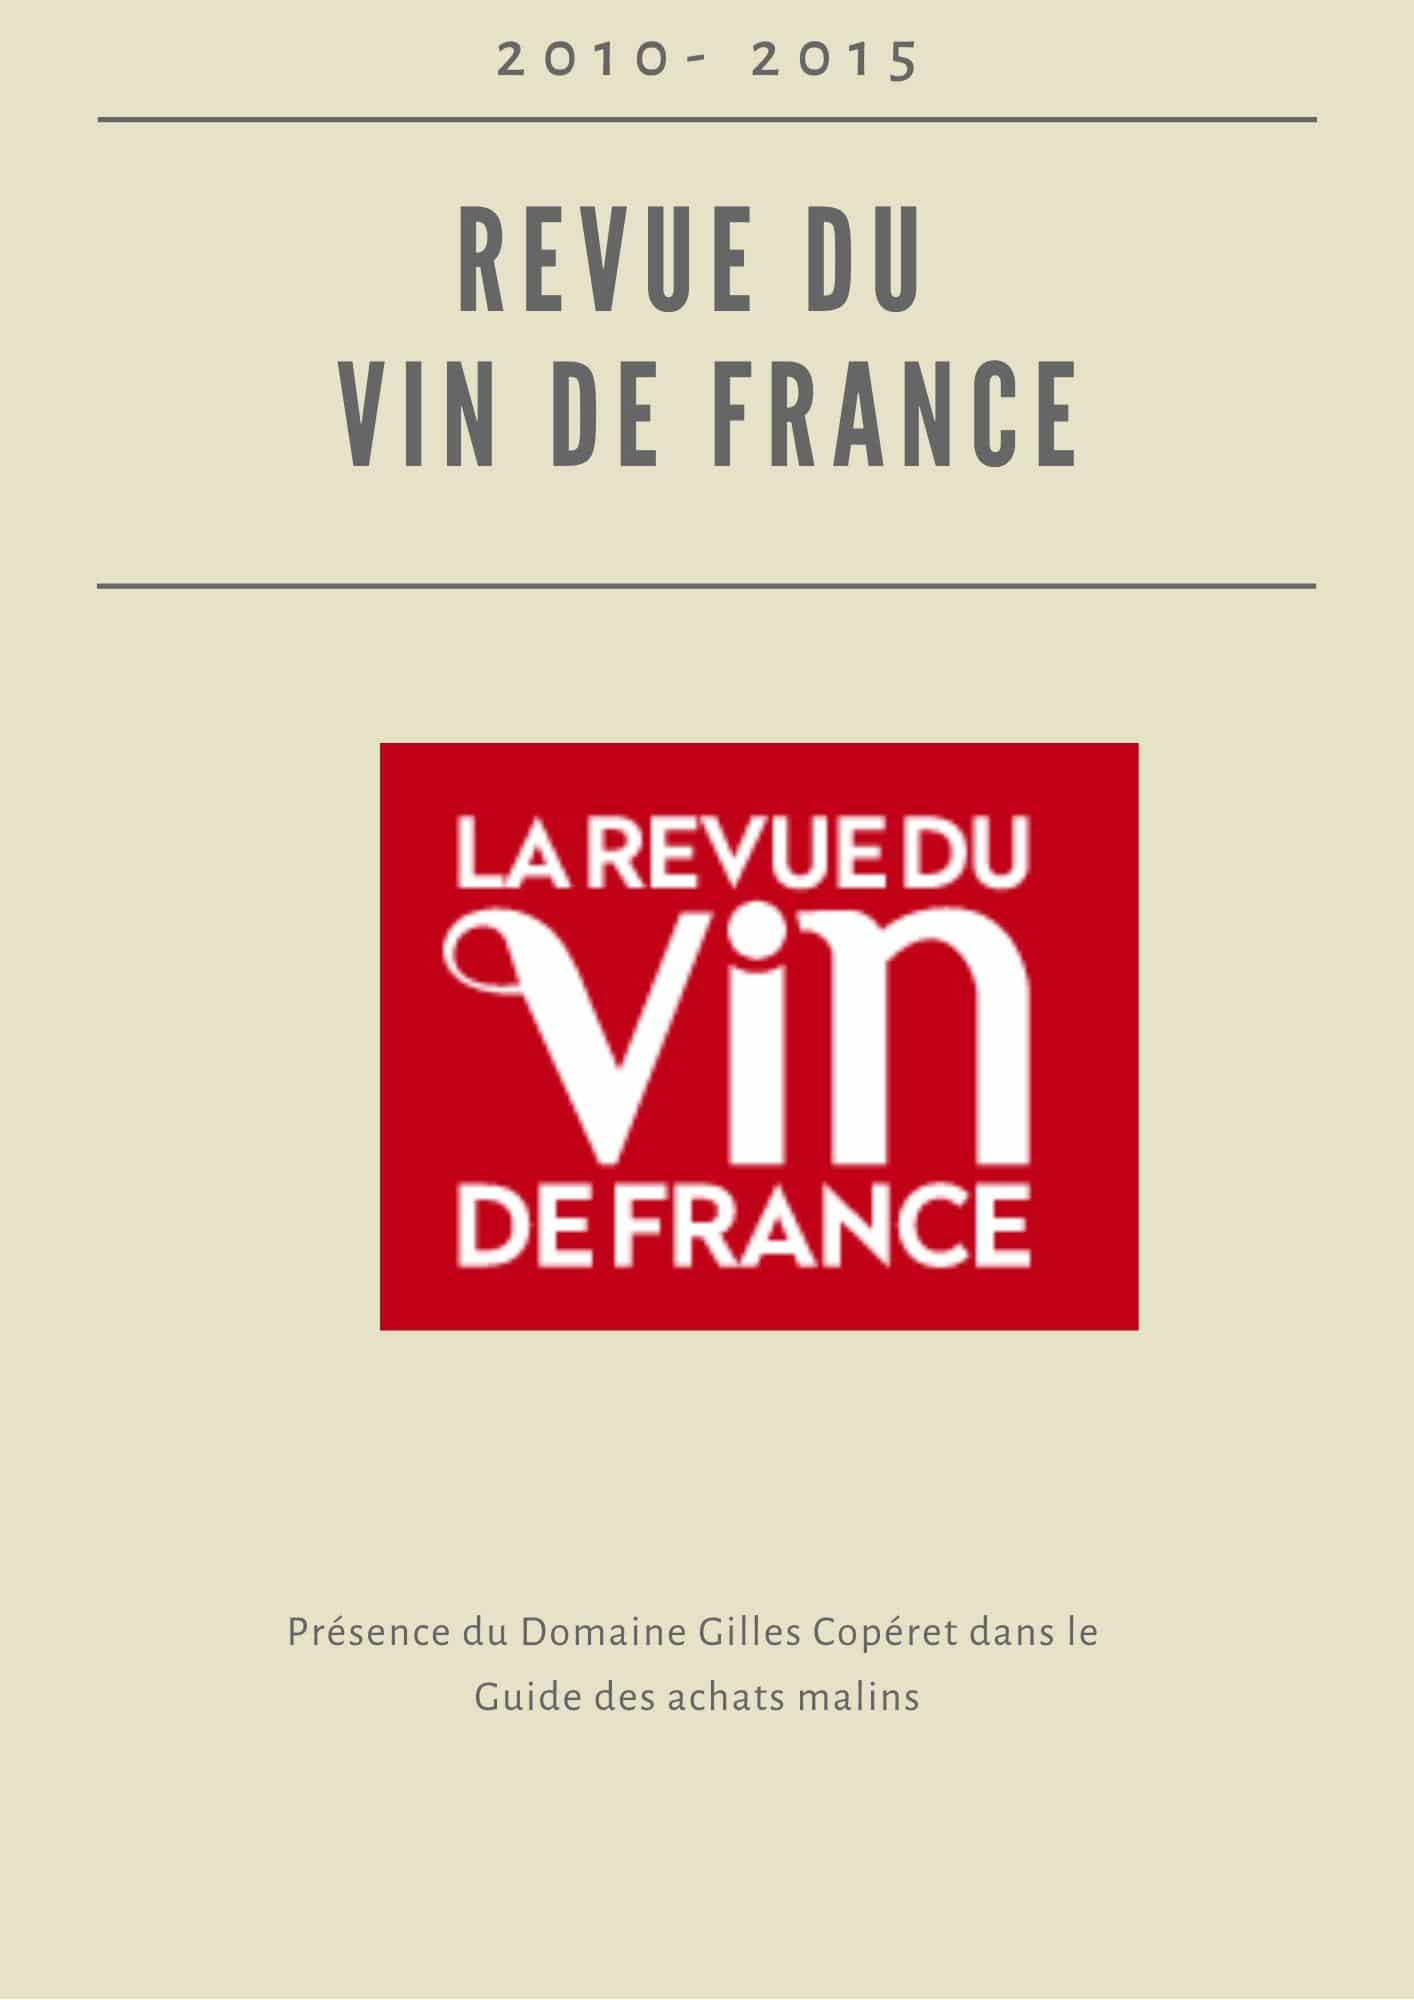 La Revue du vin de France